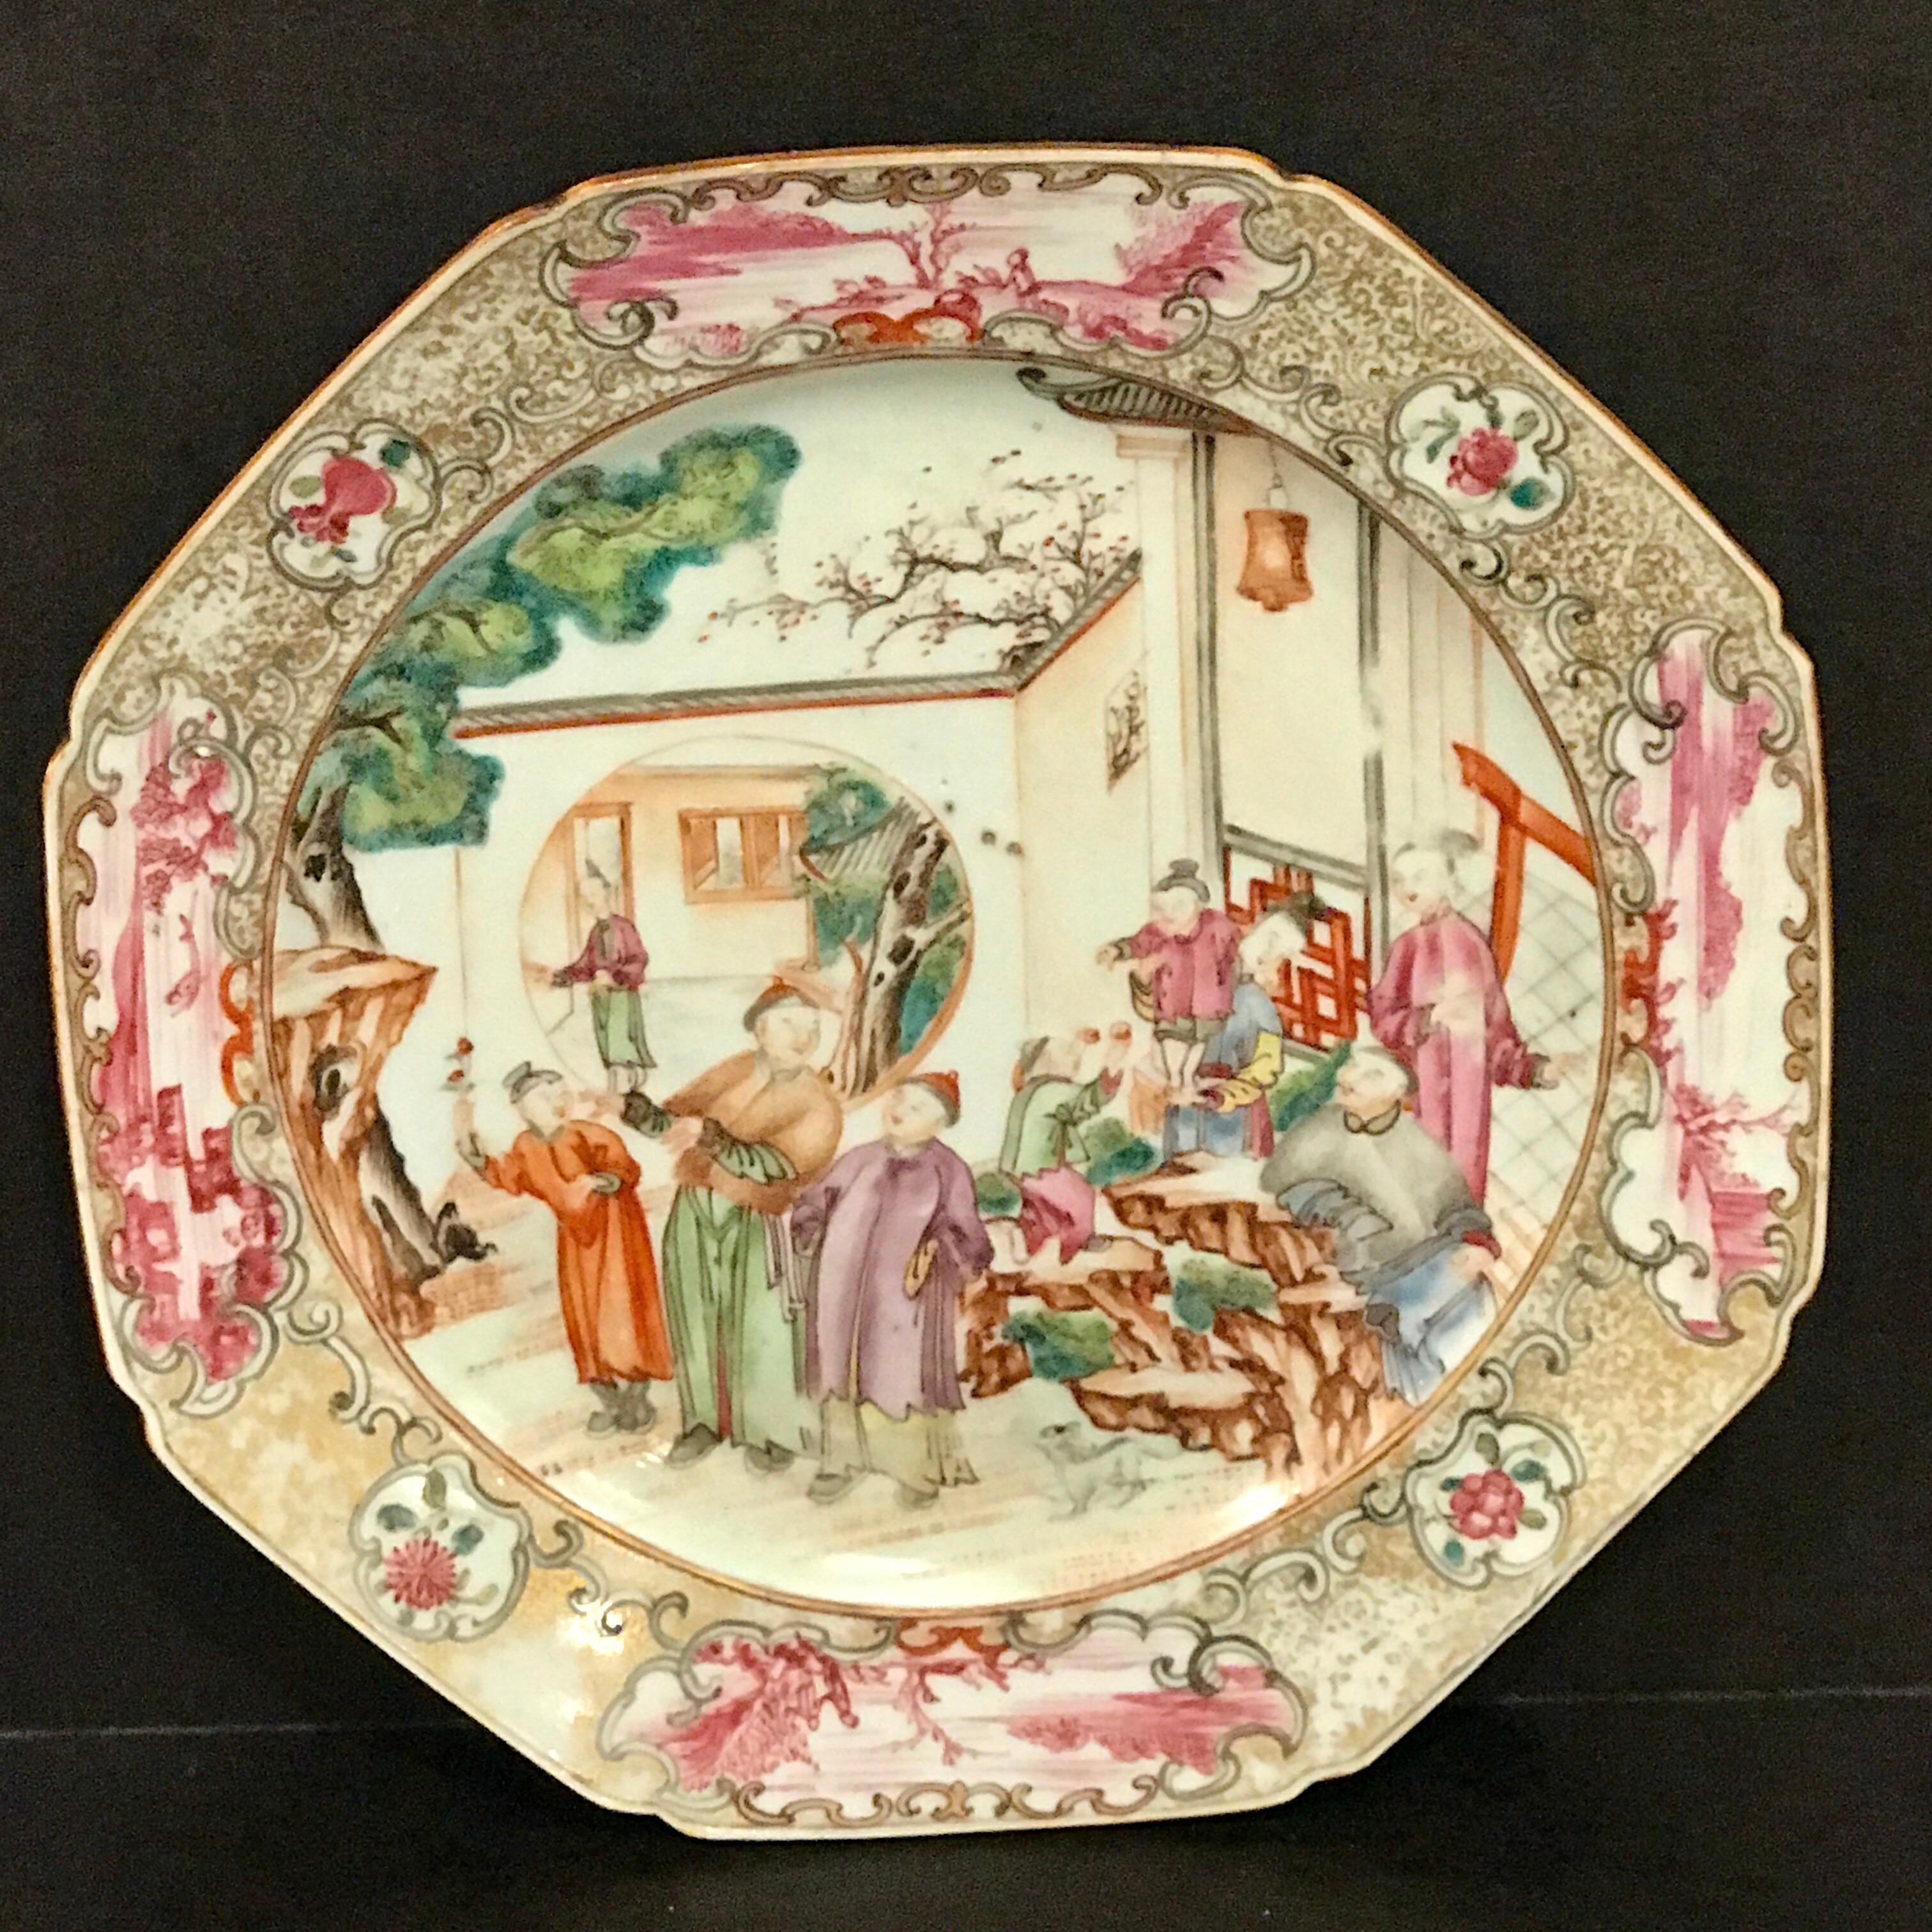 Assiette octogonale en famille verte d'exportation chinoise du XVIIIe siècle, délicieusement peinte d'une scène de cour avec une bordure en rouge de fer et en grisaille.